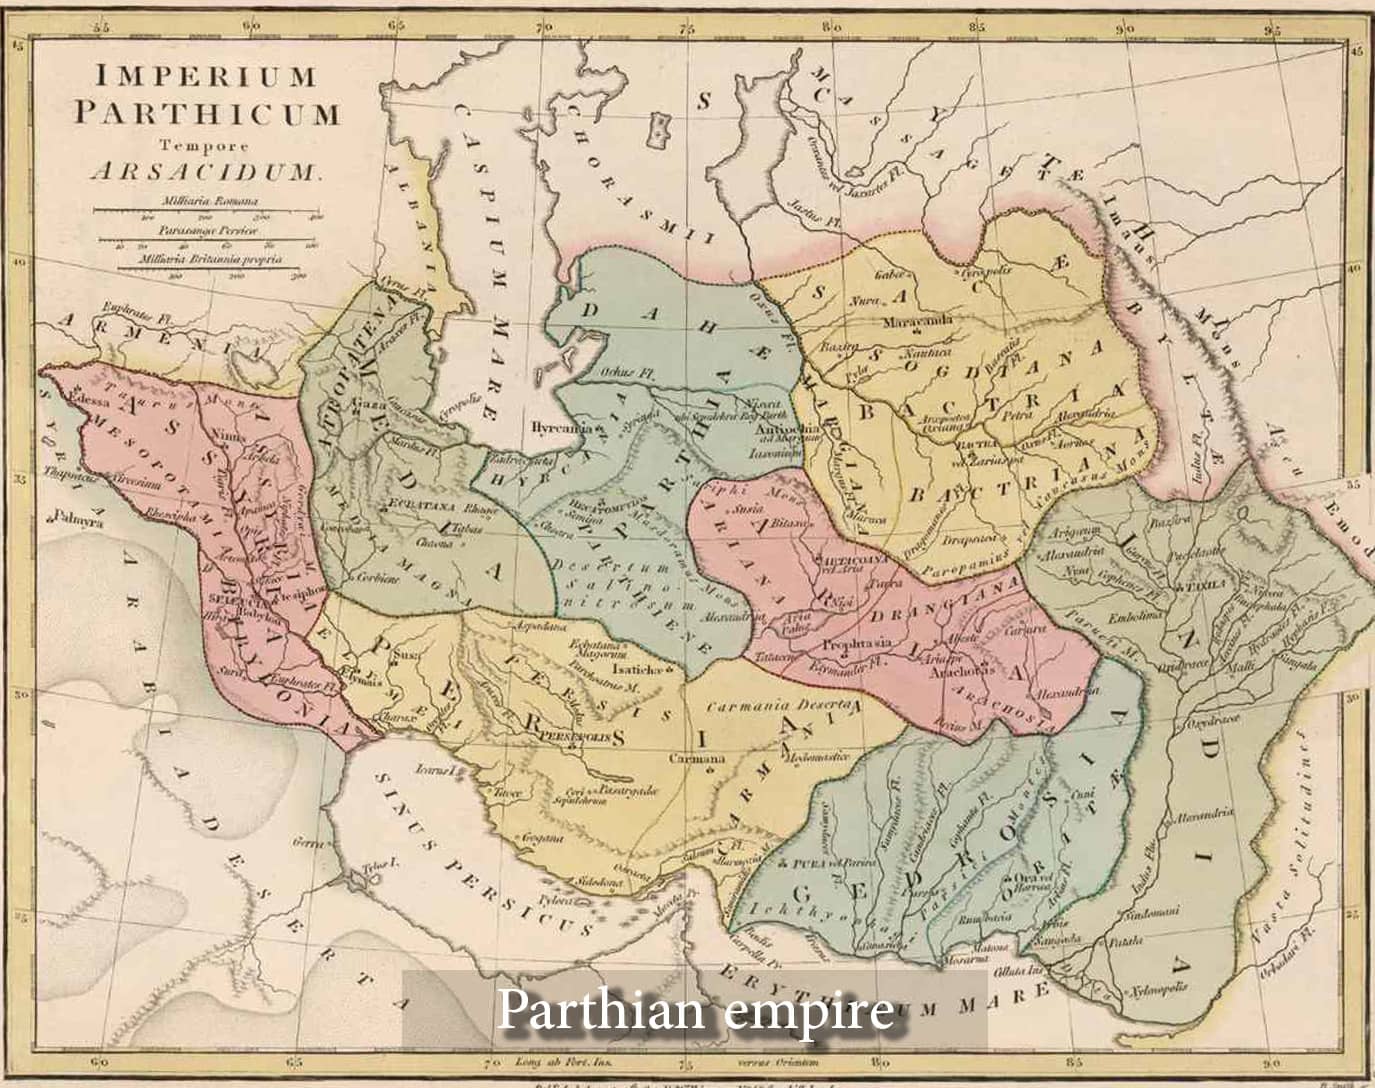 History of Iran - Parthian empire